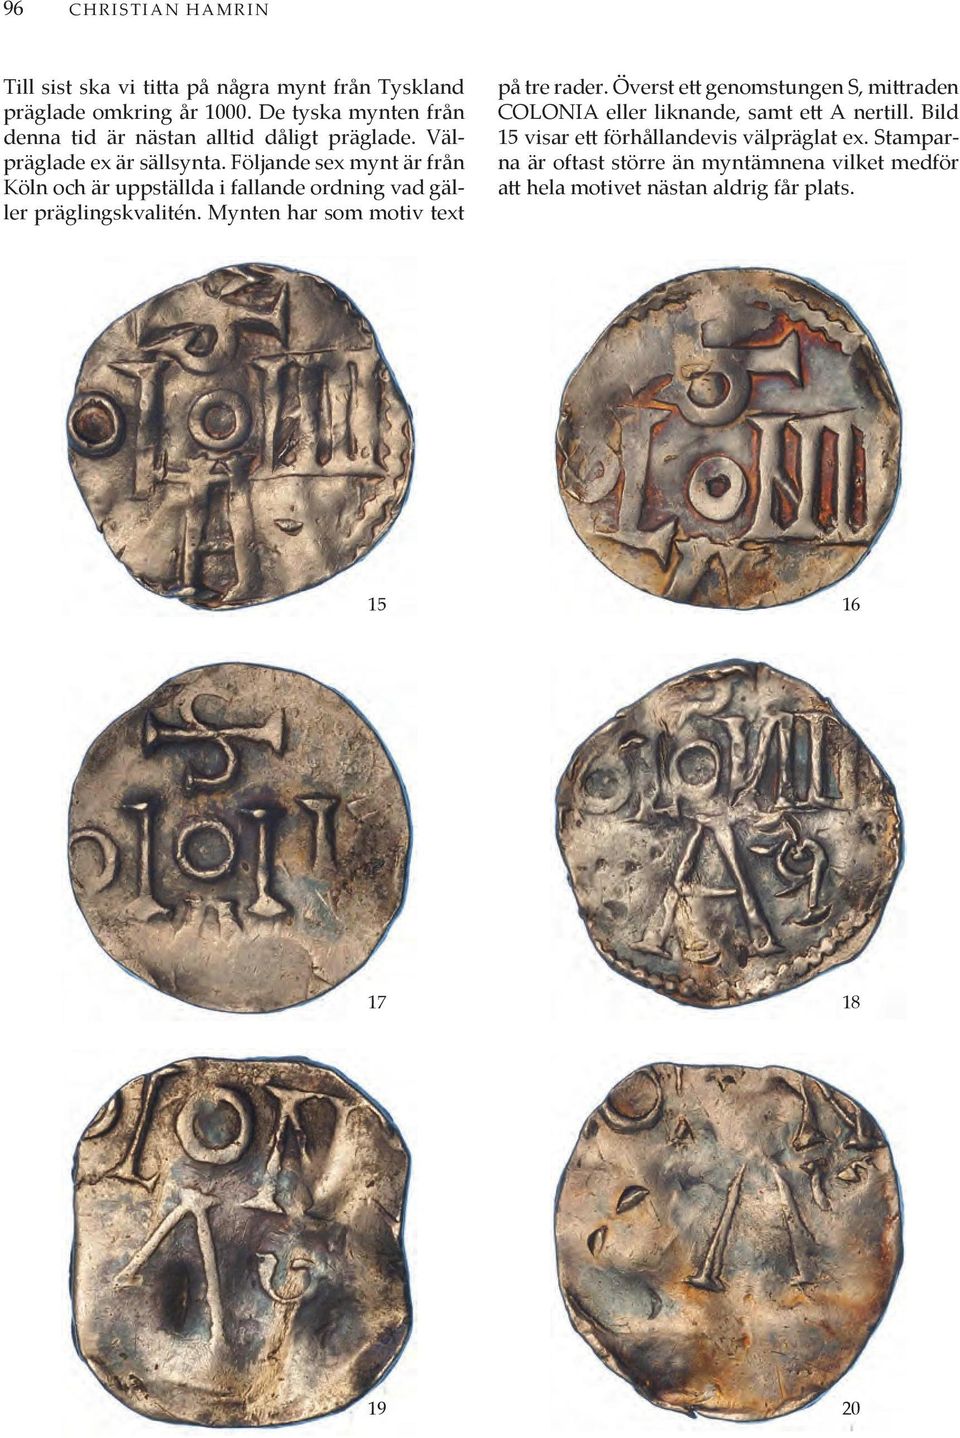 Följande sex mynt är från Köln och är uppställda i fallande ordning vad gäller präglingskvalitén. Mynten har som motiv text på tre rader.